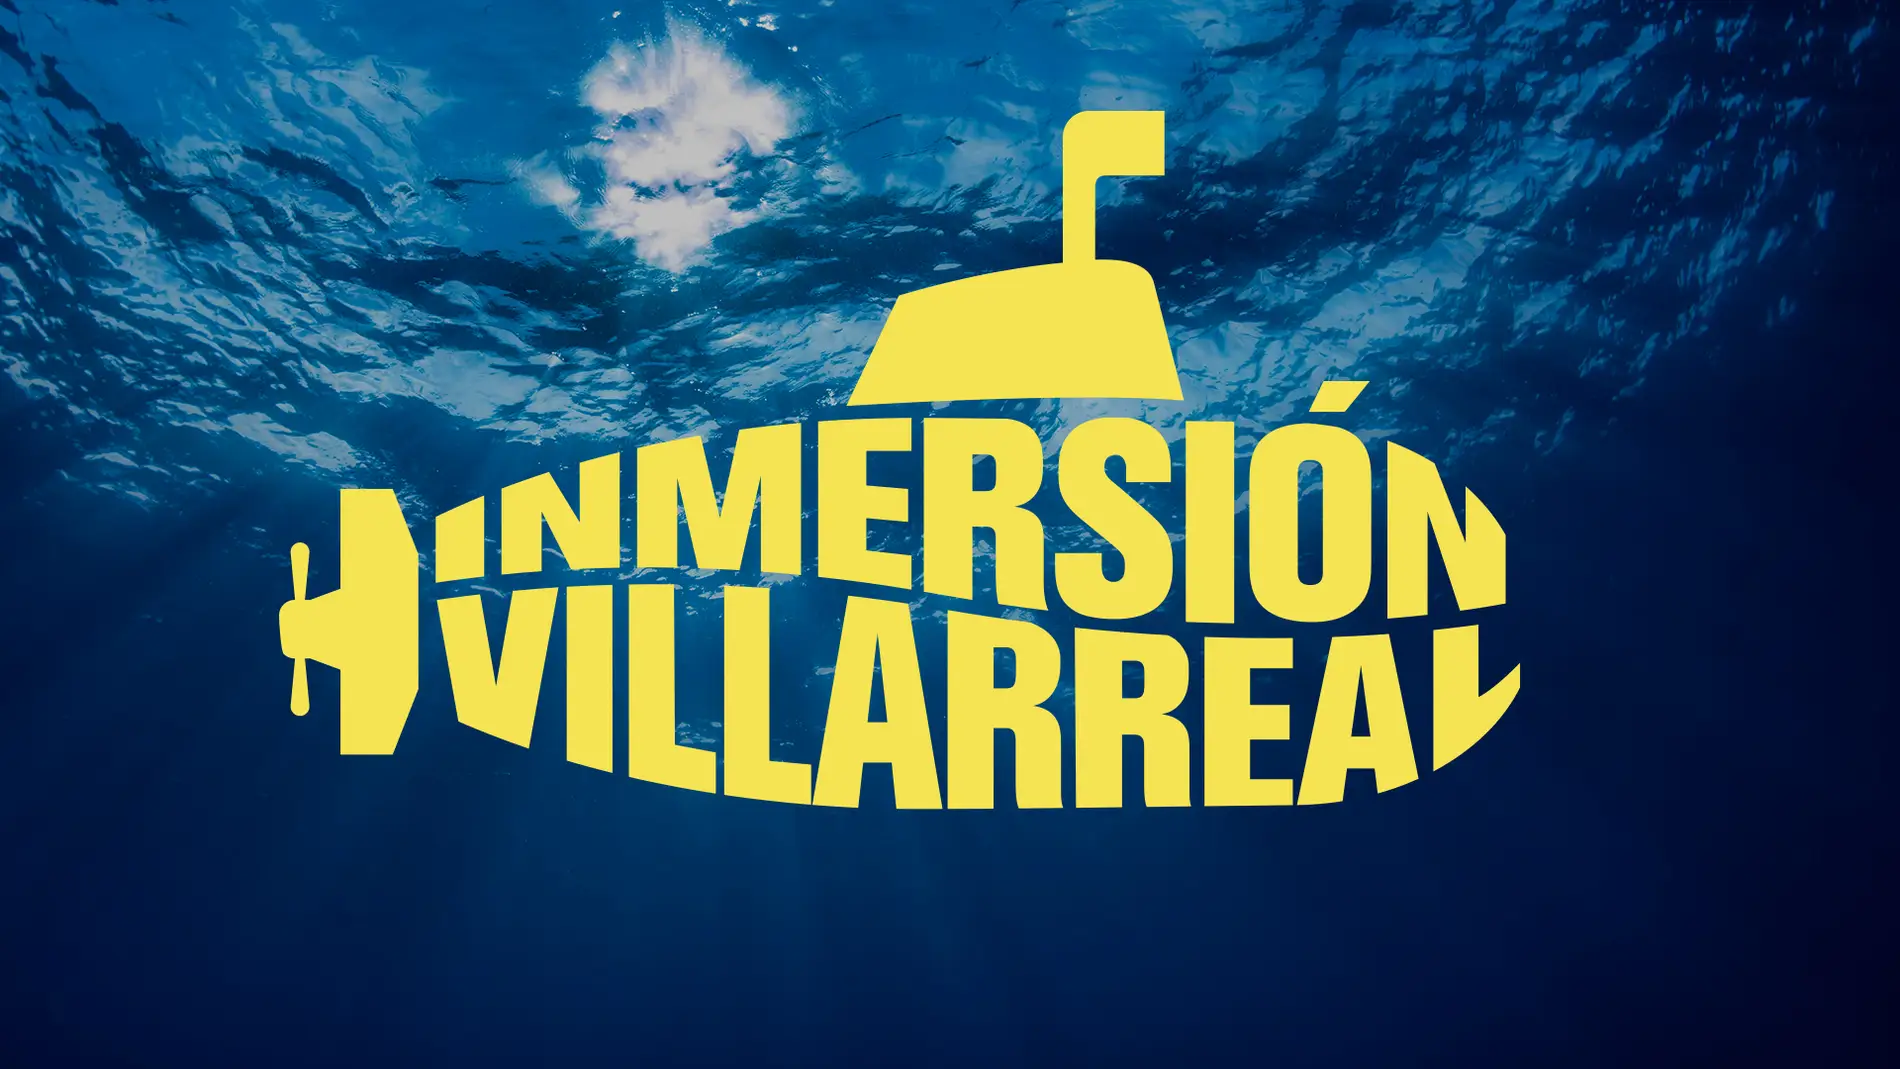 El nuevo museo del Villarreal será una realidad a finales de mayo 